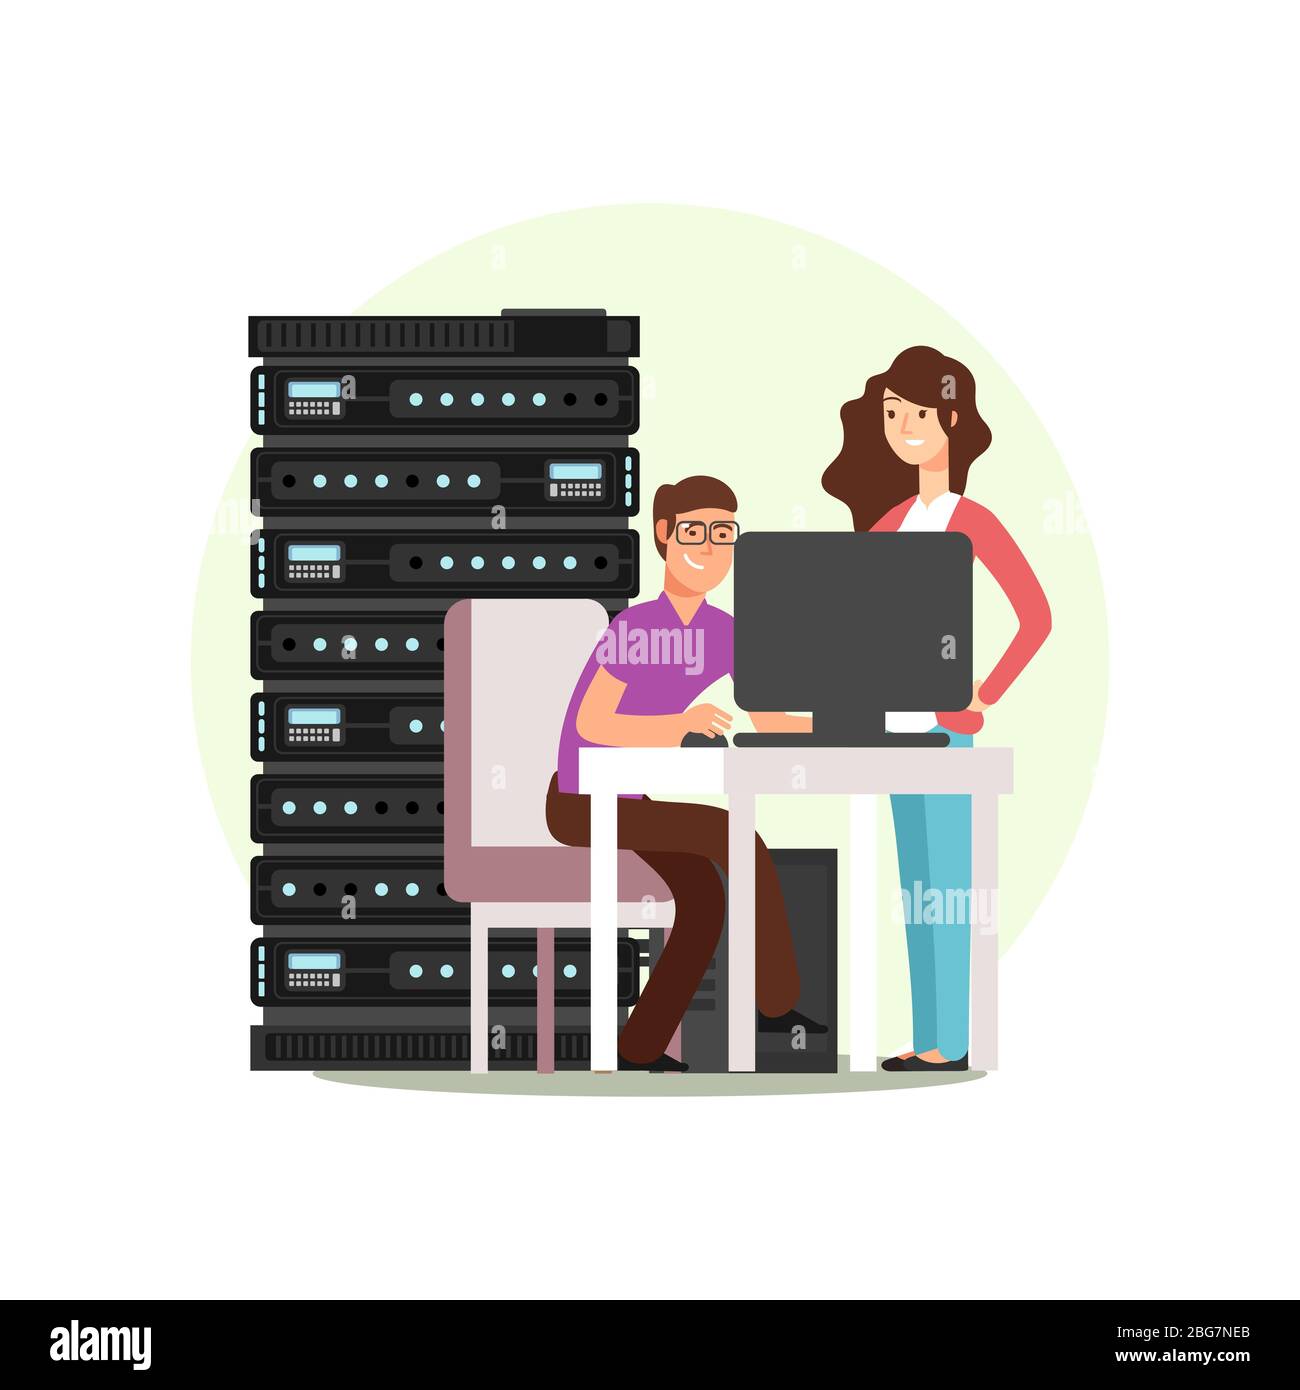 Frau und Mann Cartoon-Charakter. IT- oder Computeringenieure, die mit Datenbank, Server zusammenarbeiten. Vektorgrafik Stock Vektor